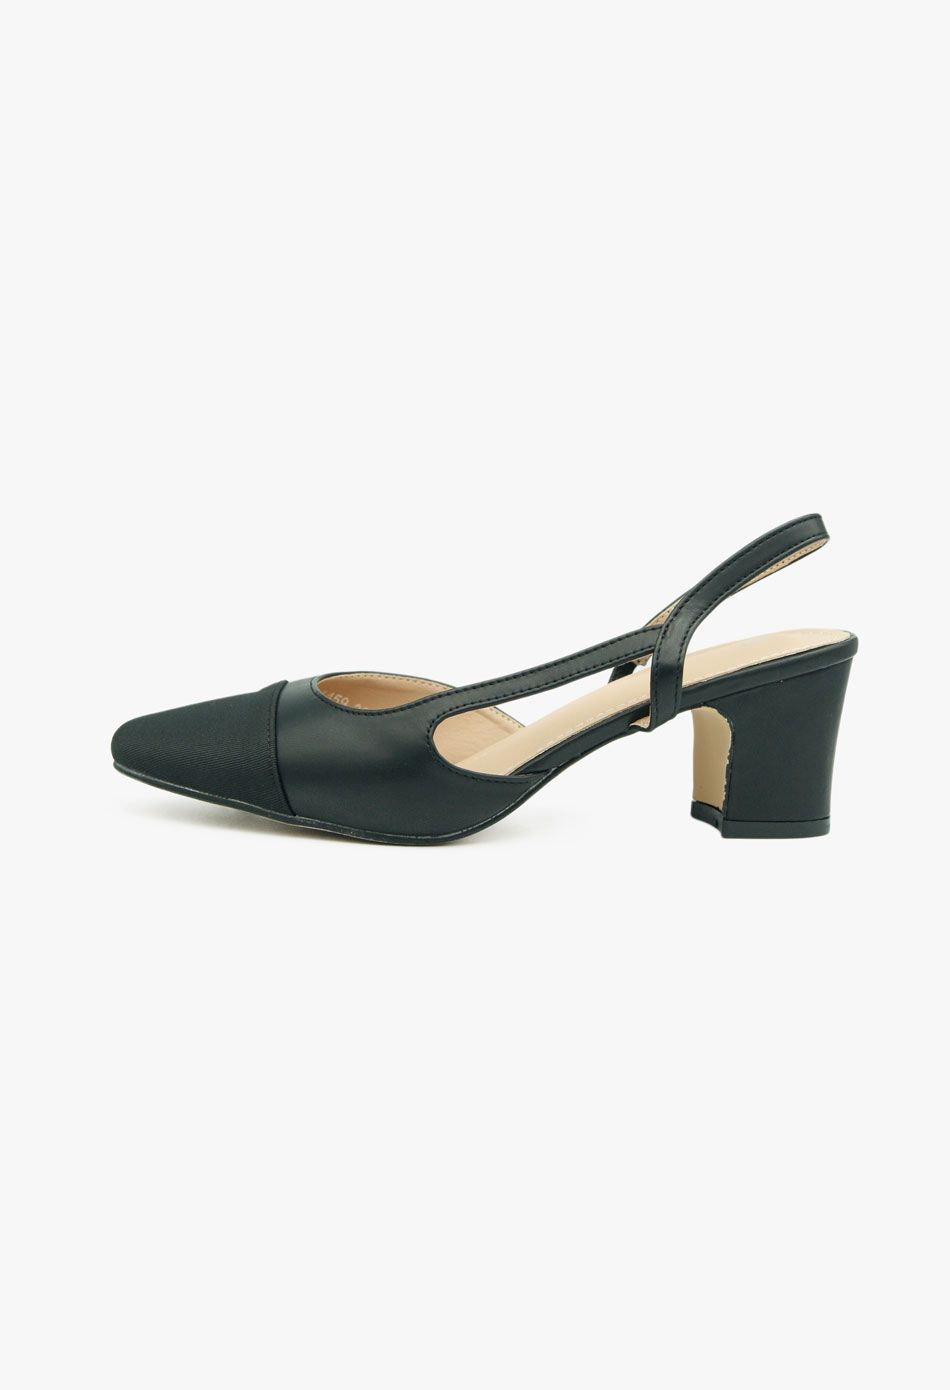 Γόβες Open Heel με Τόκα Μαύρο / LL-1459-black Ανοιχτά Παπούτσια joya.gr